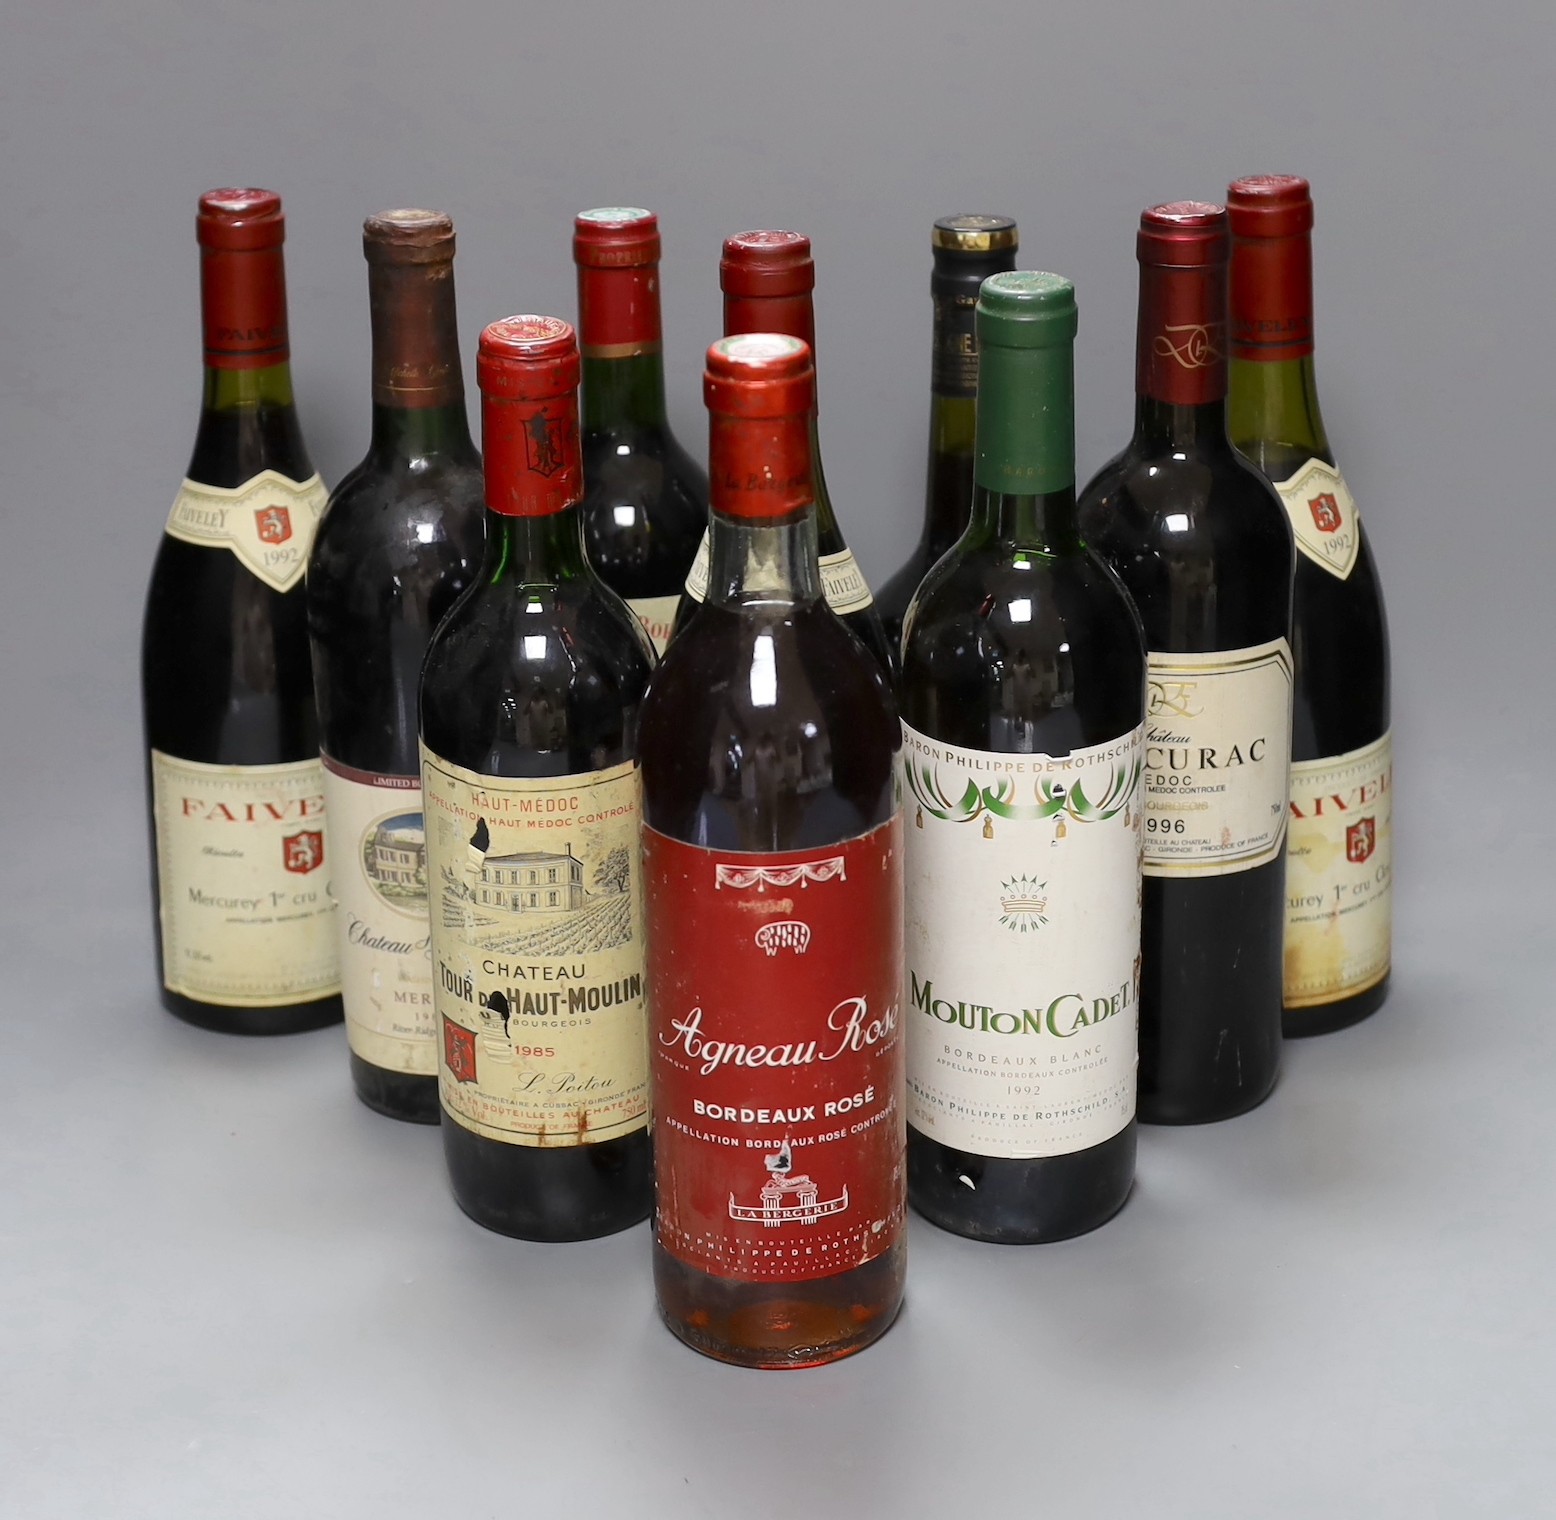 Ten bottles of various wine to include three bottles of 1992 Faiveley Mercurey 1er Cru Clos du Roy, 1985 Chateau Tour du Haut Moulin, 1985 Chateau Ste Michelle, 1993 Versant Royal Grand vin de Bordeaux and others